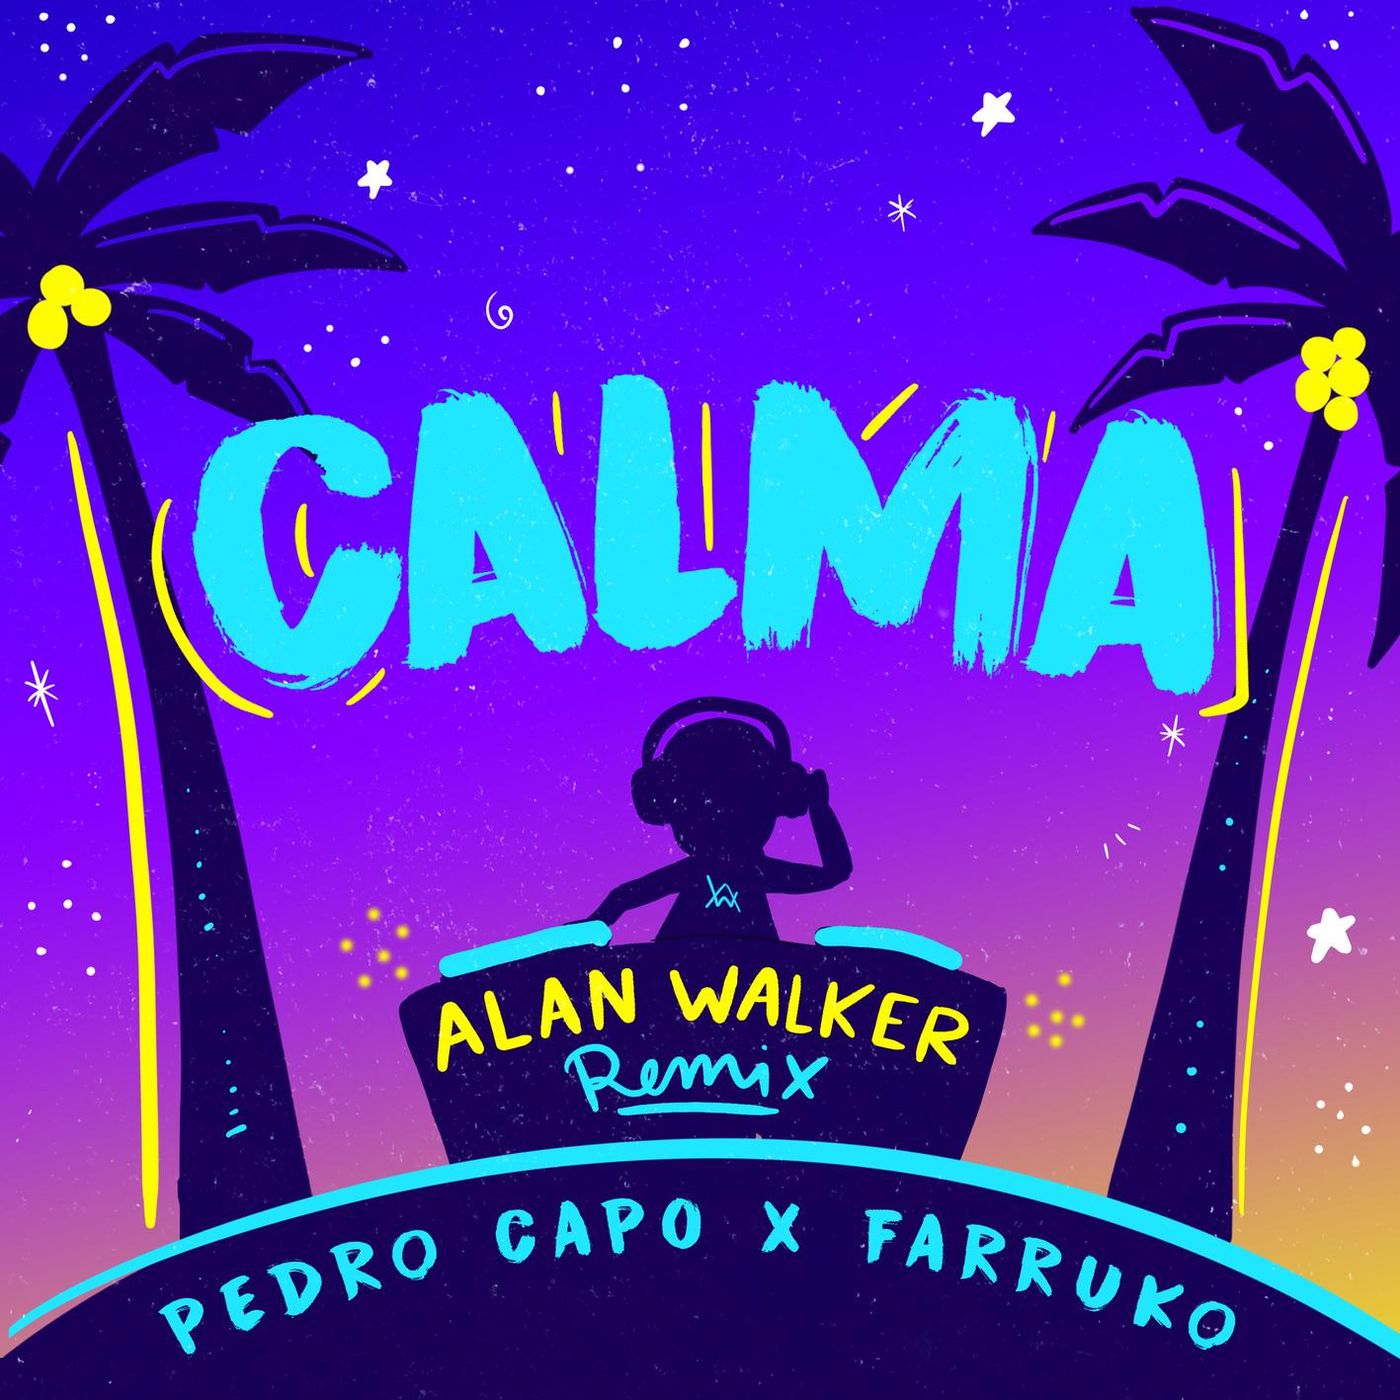 Pedro Capo FEAT. Alan Walker & Farruko - Calma (Alan Walker Remix).mp3